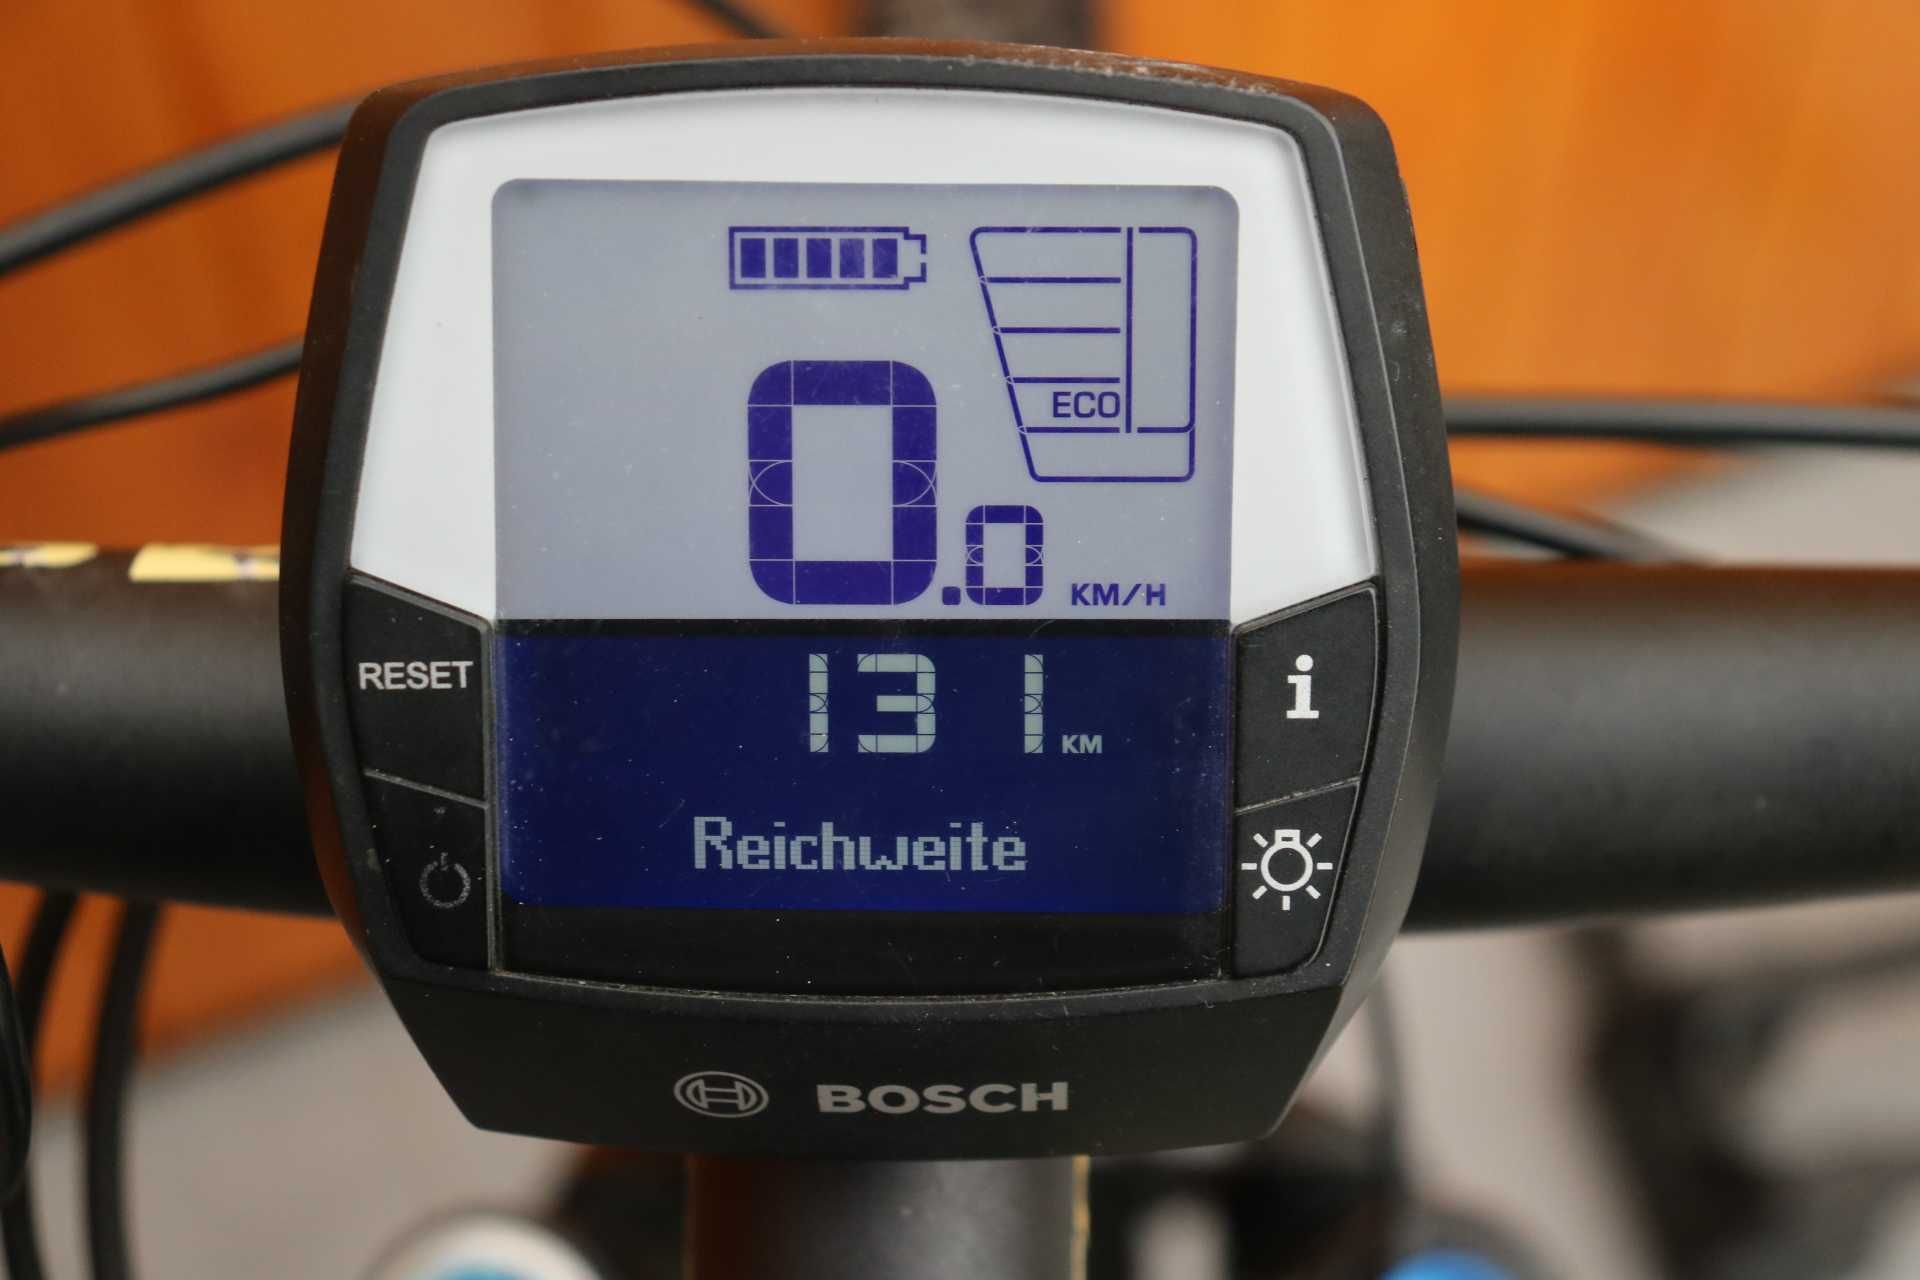 Rower elektryczny Scott Aspect 710.I inne rowery